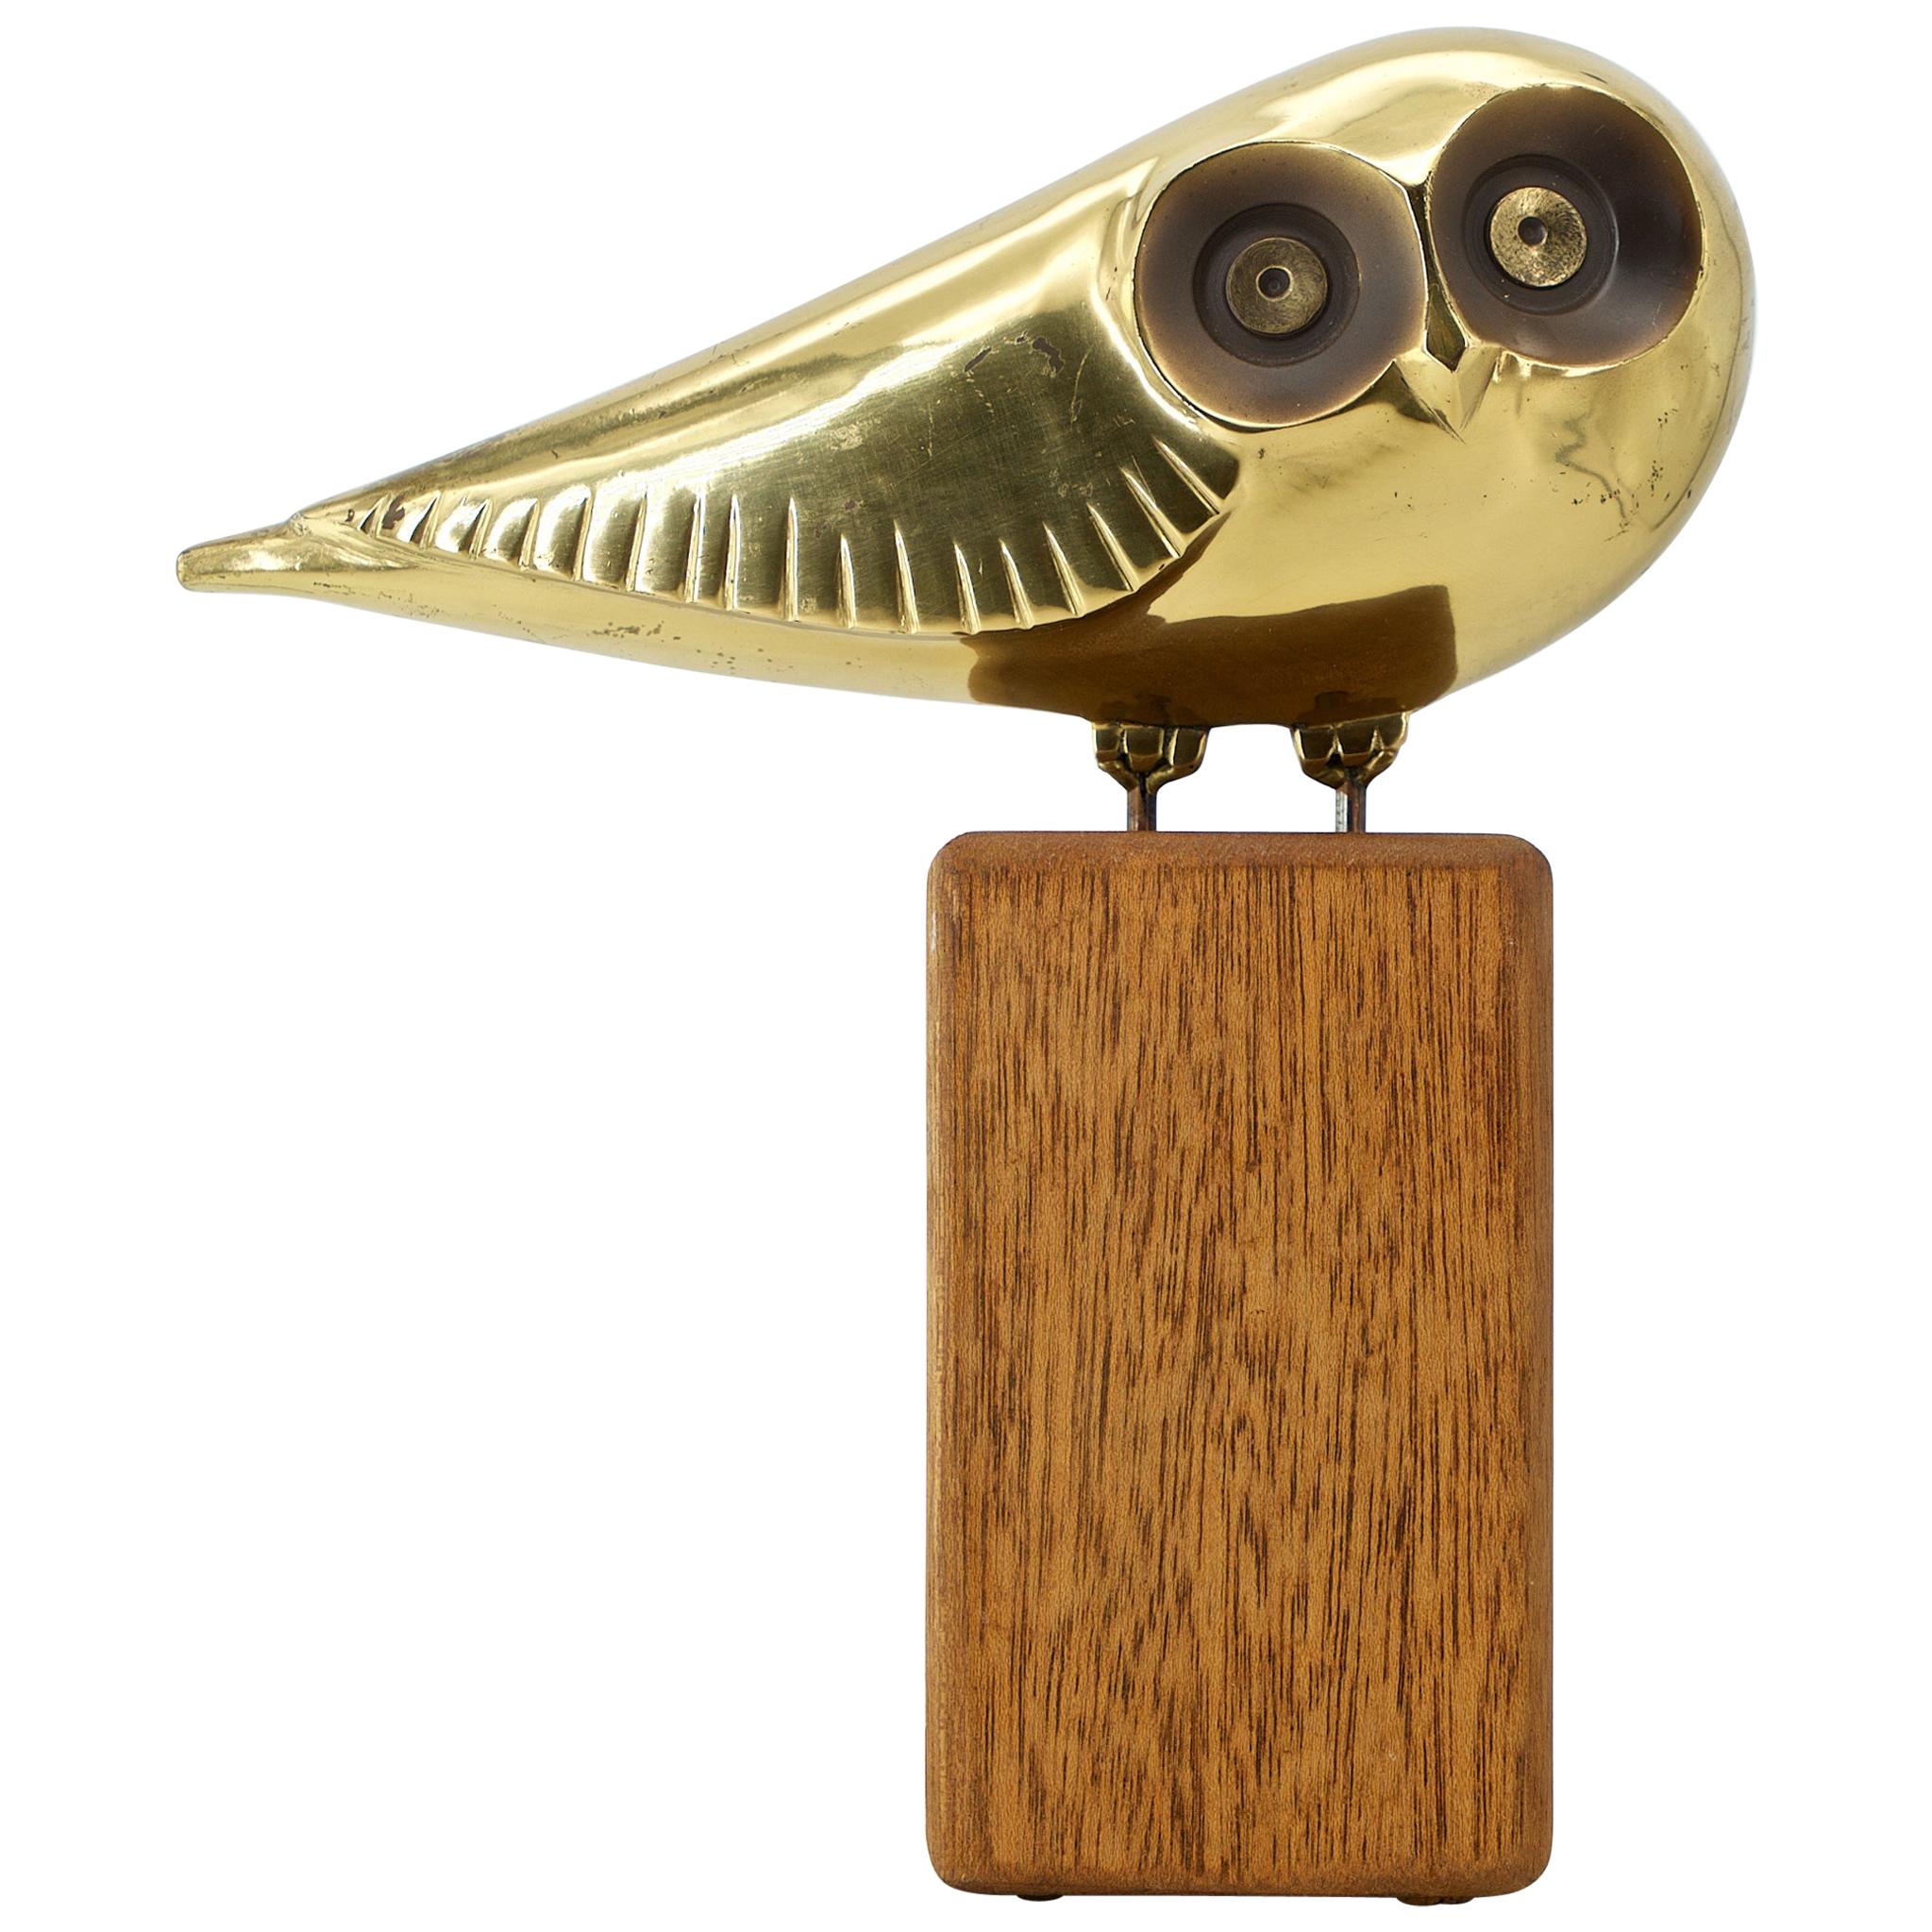 1980s Midcentury Brass Owl Stylized Art Space Age Regency Bird Sculpture C.Jere